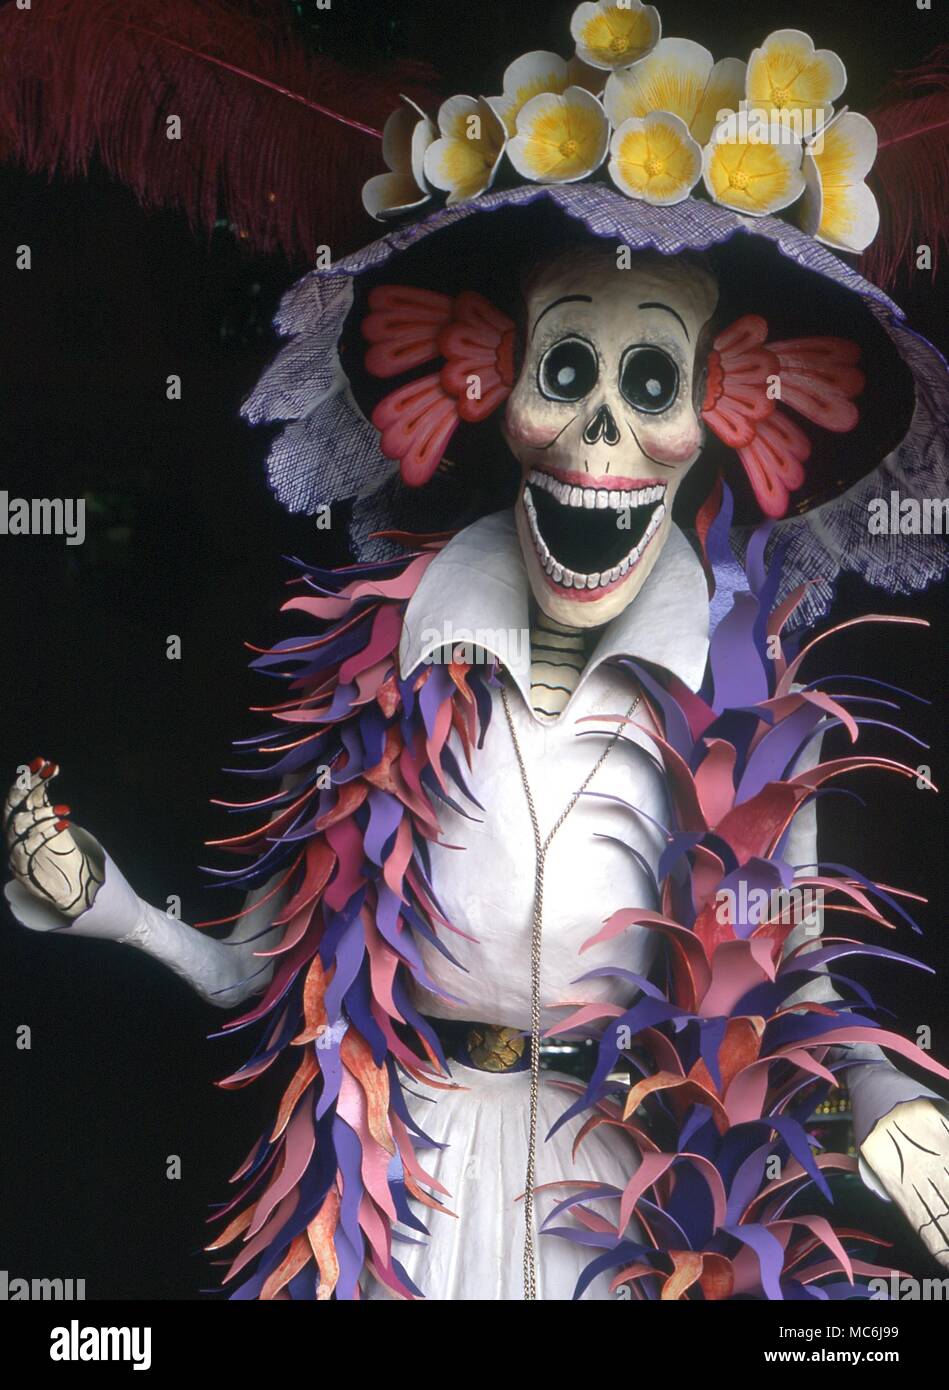 Décès - FESTIVAL DE LA MORT. Modèle d'un vêtu, fait pour célébrer l'important Festival des Morts au Mexique. photographié à Oaxaco Banque D'Images